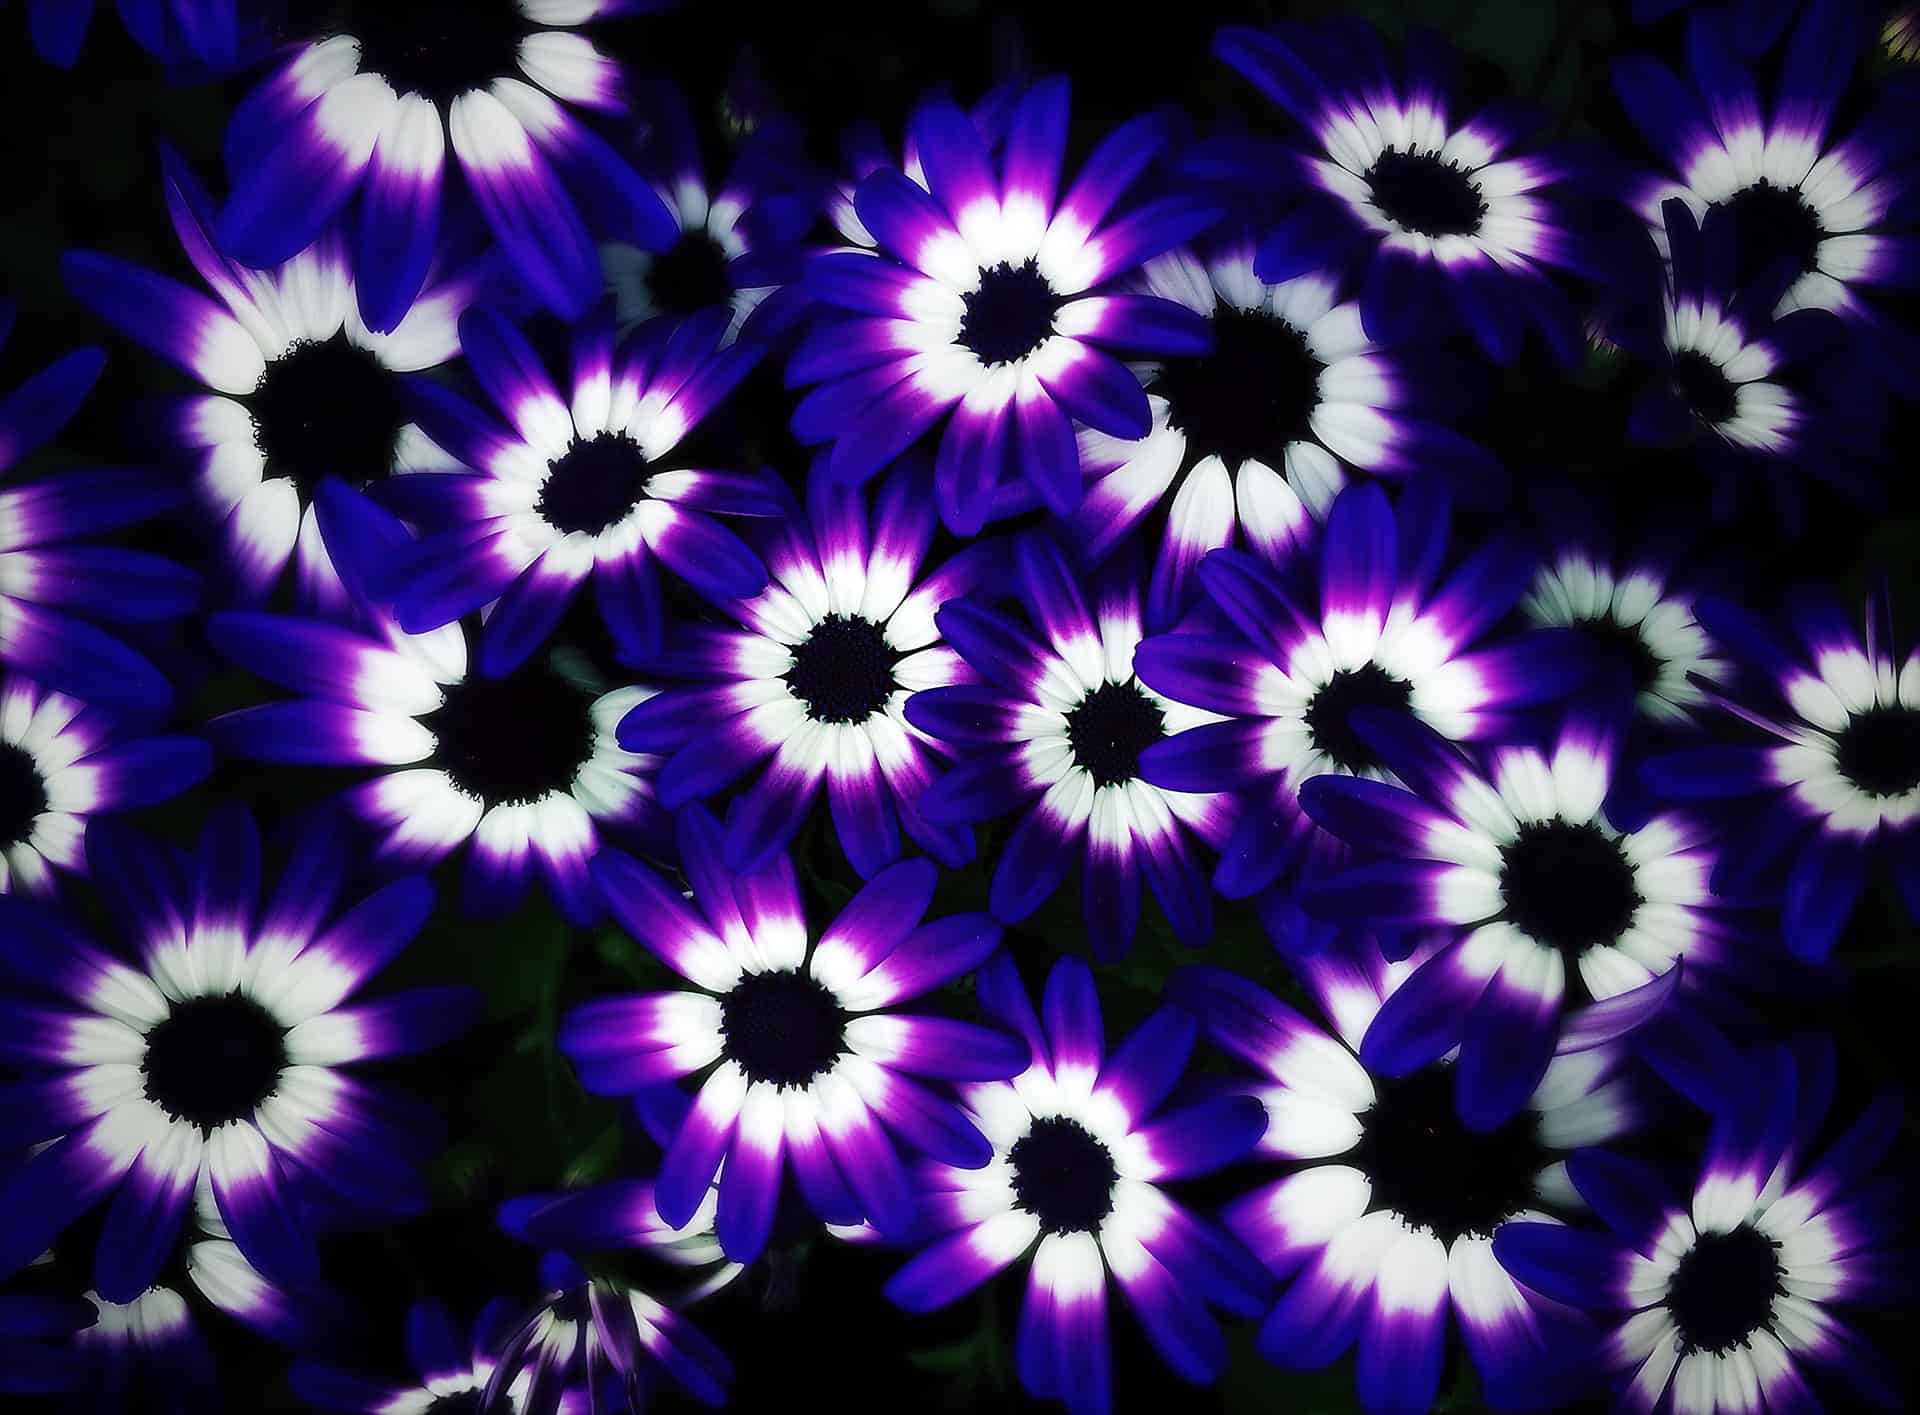 artnorama - Purple Blossom